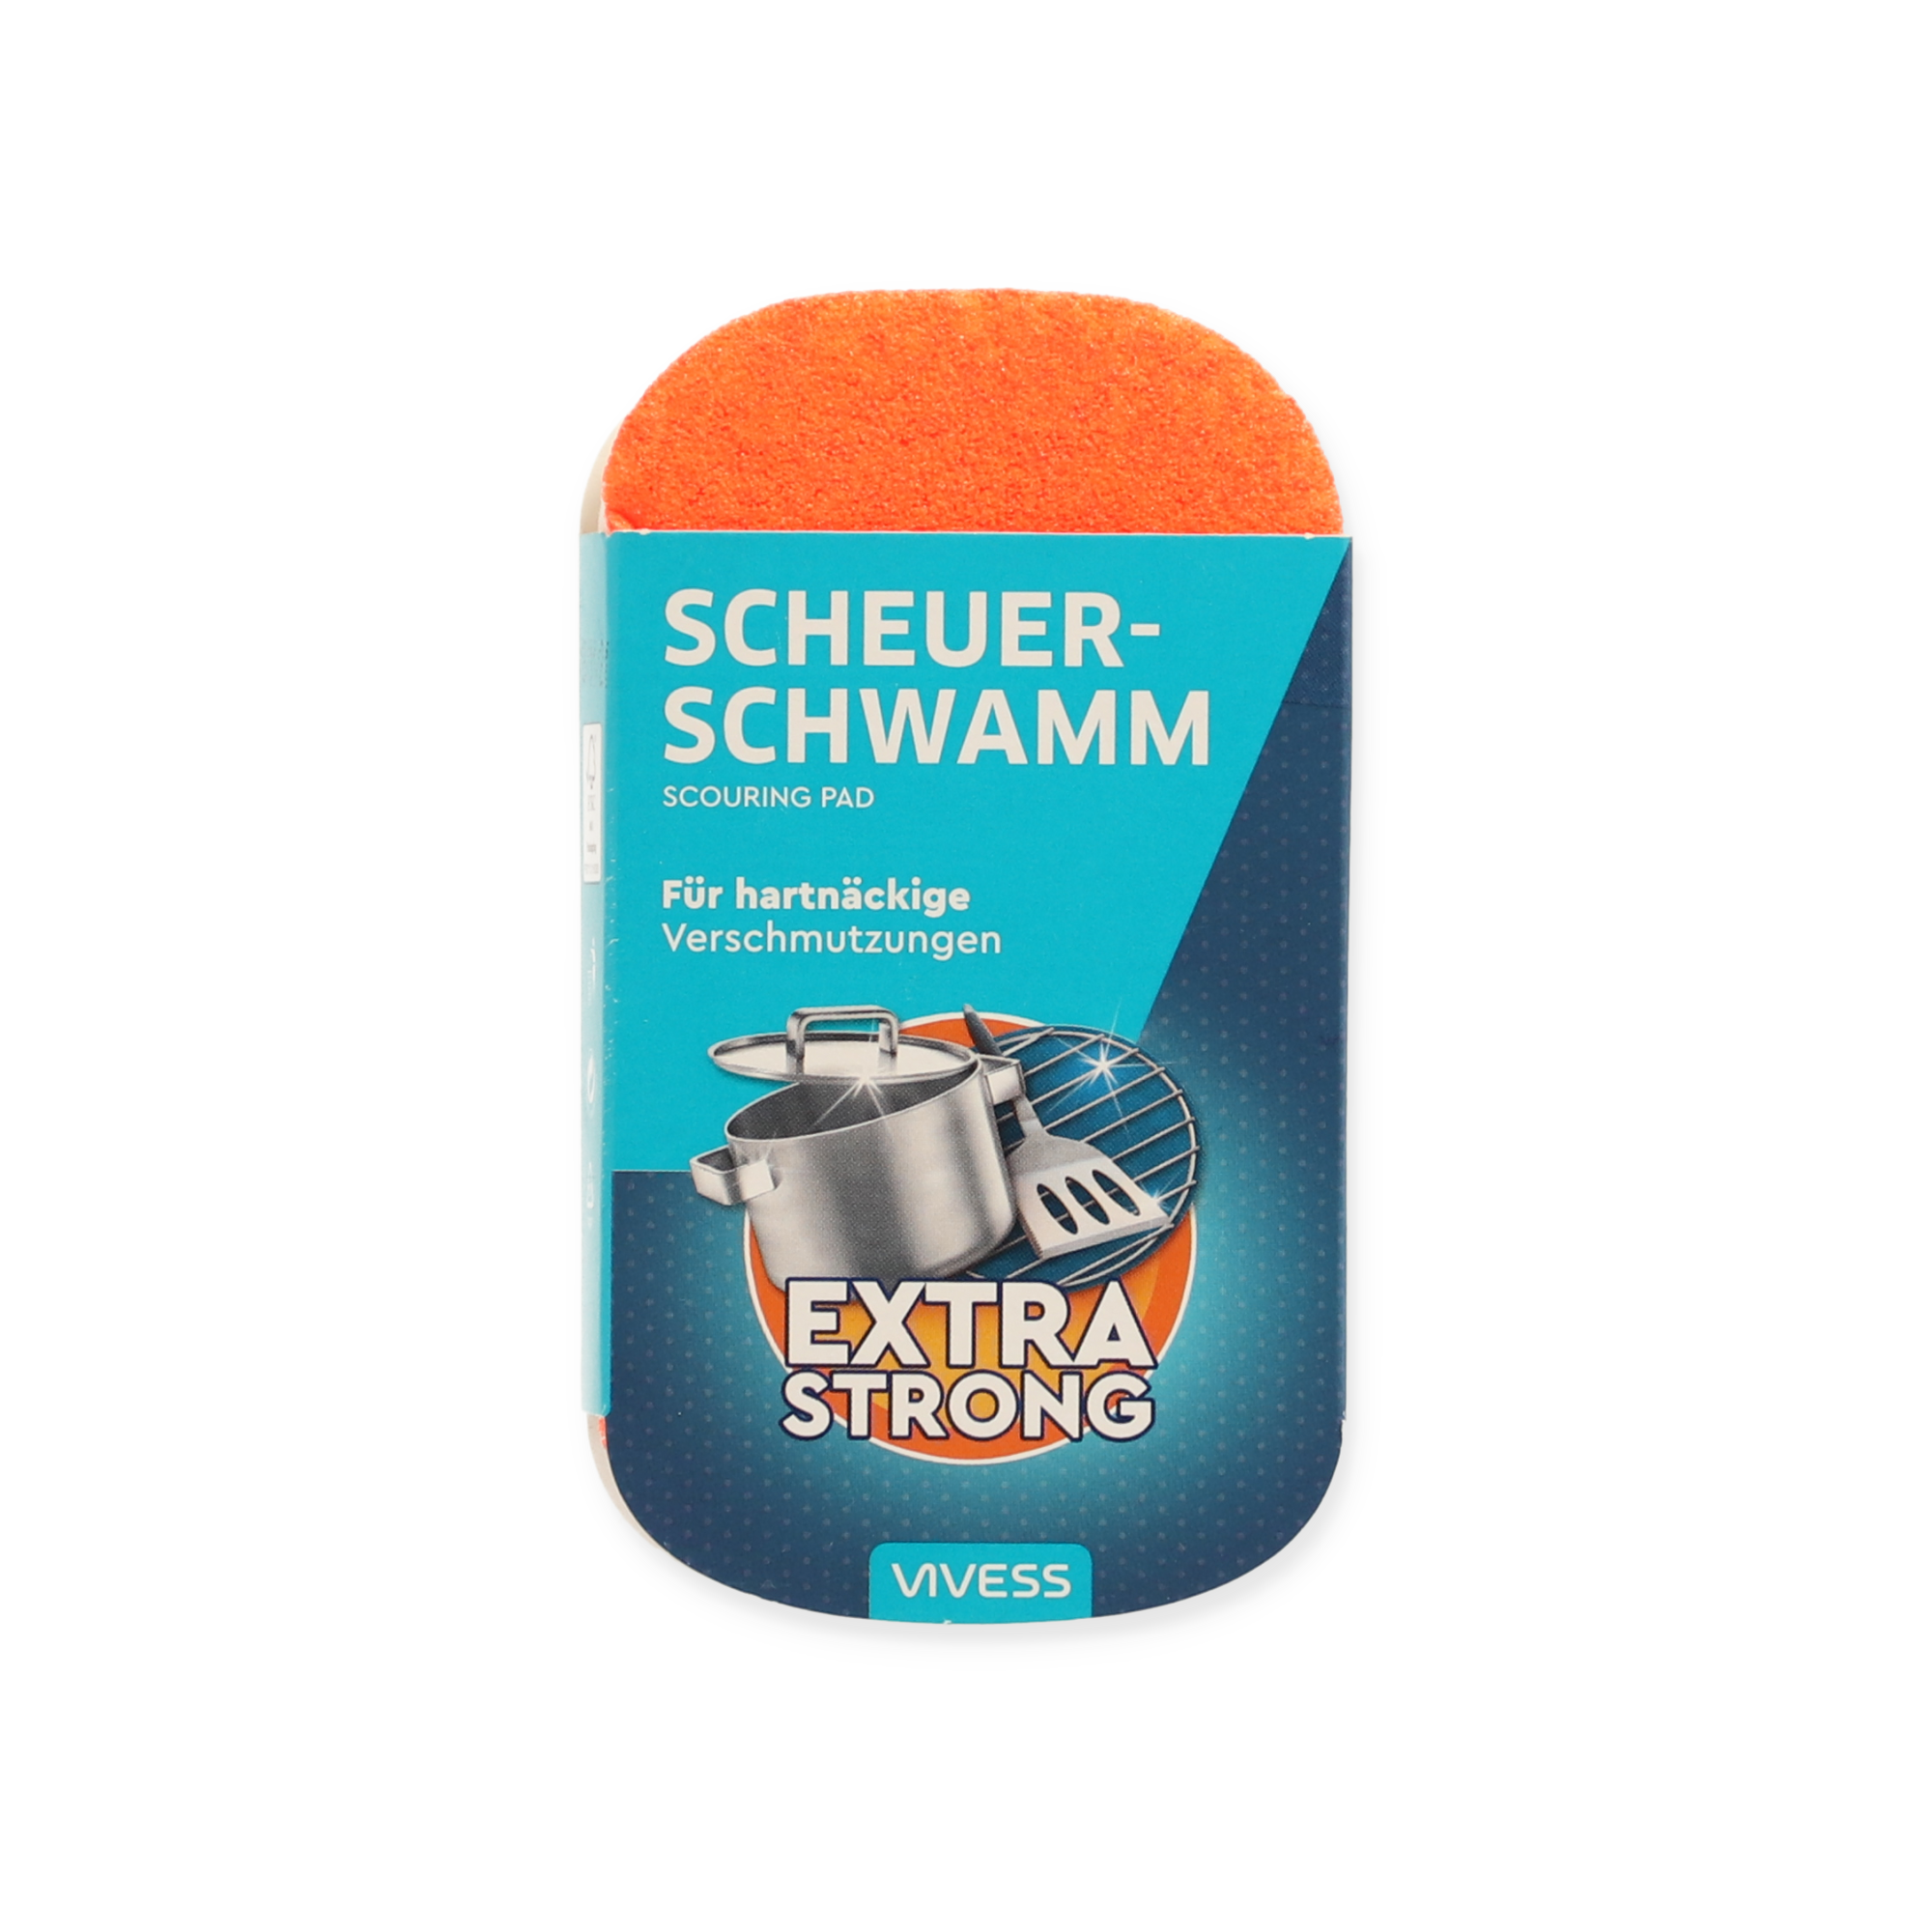 Scheuerschwamm 'Extra Strong' bunt sortiert + product picture